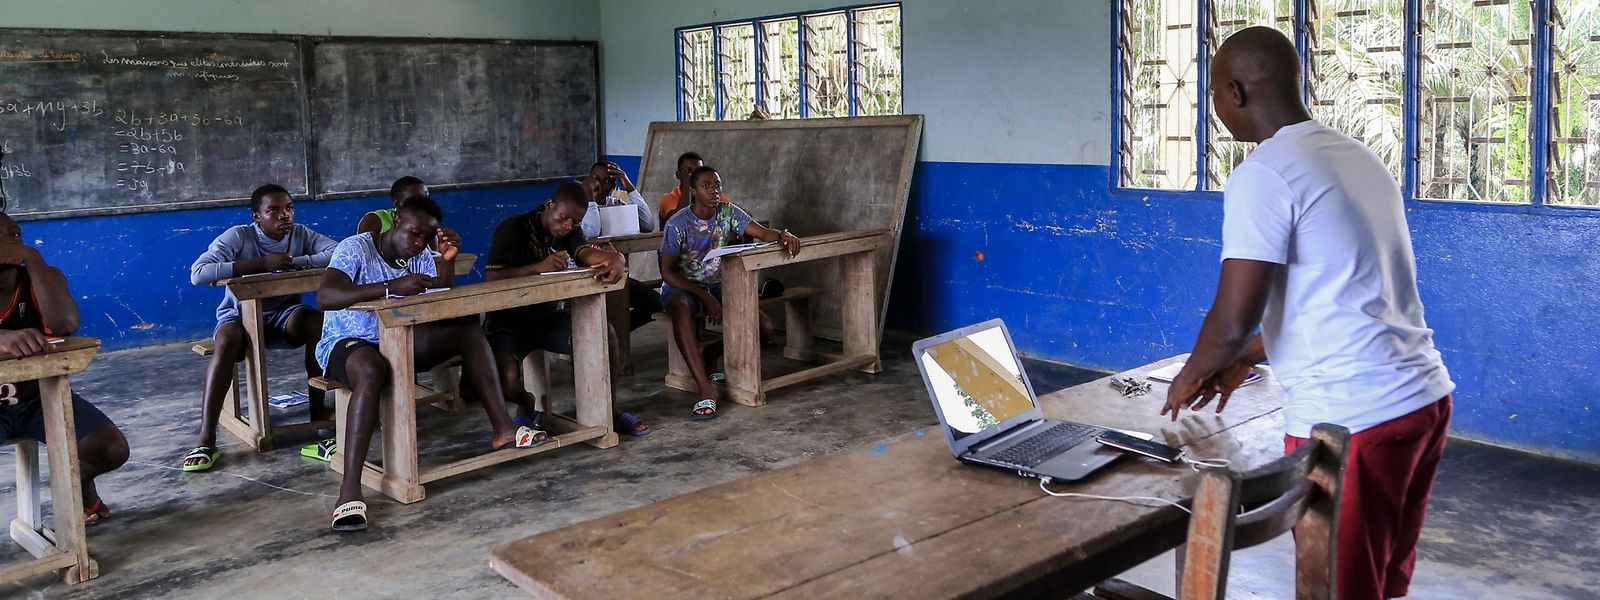 Diese Jugendlichen im kamerunischen Douala gehören zu den Glücklichen, die unterrichtet werden. Aufgrund der anhaltenden Kämpfe bleiben 80 Prozent der Schulpflichtigen dem Unterricht fern.